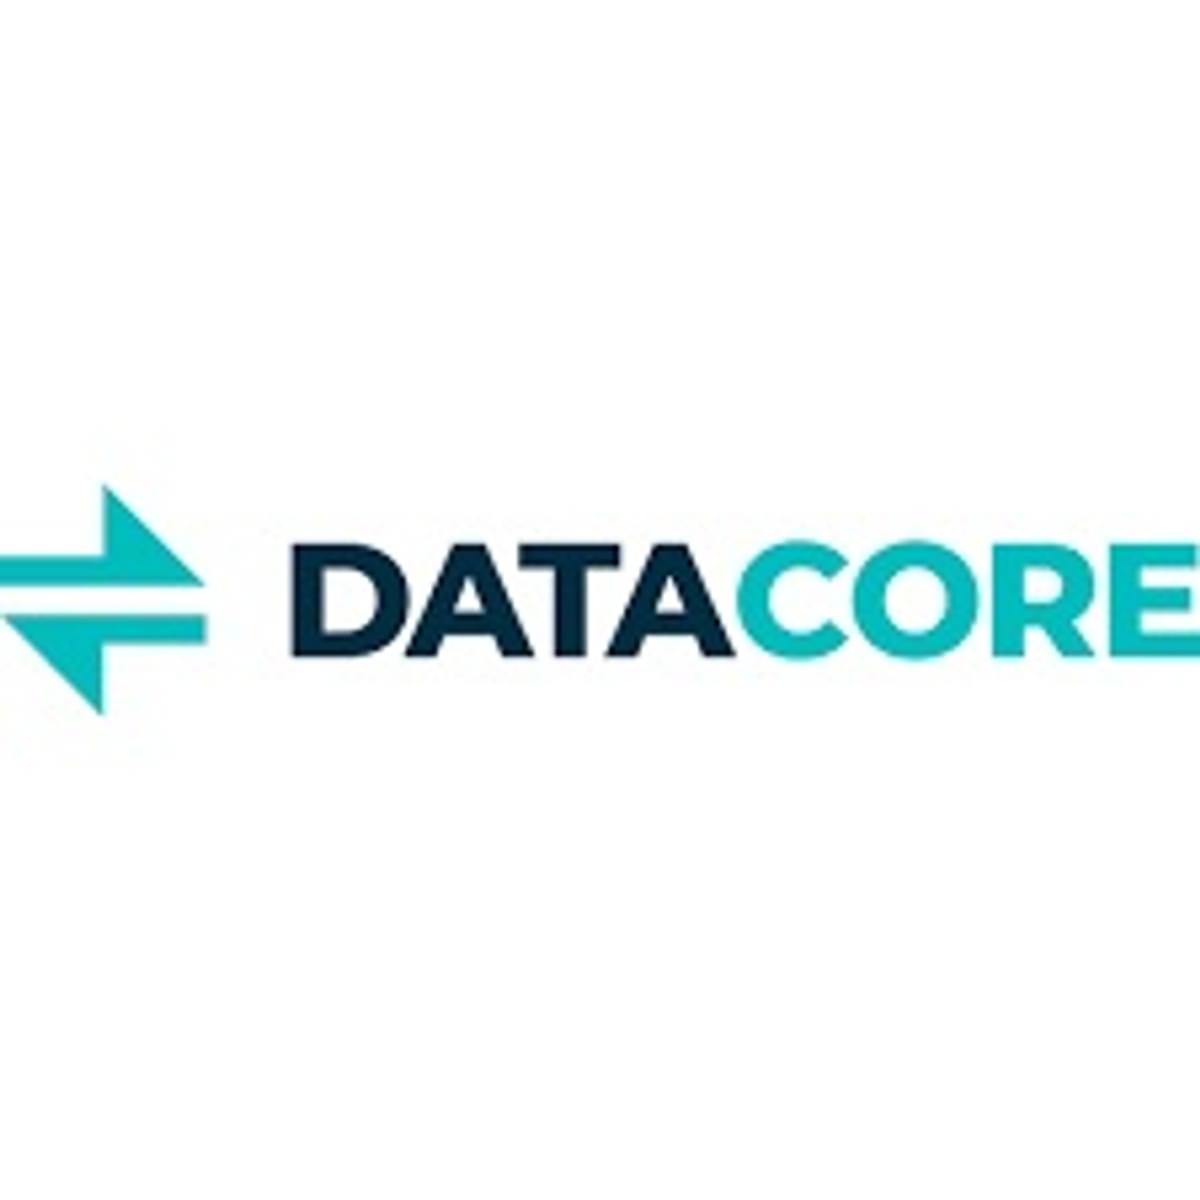 DataCore team uitgebreid met Danny Pelders en Pieter van de Burg image